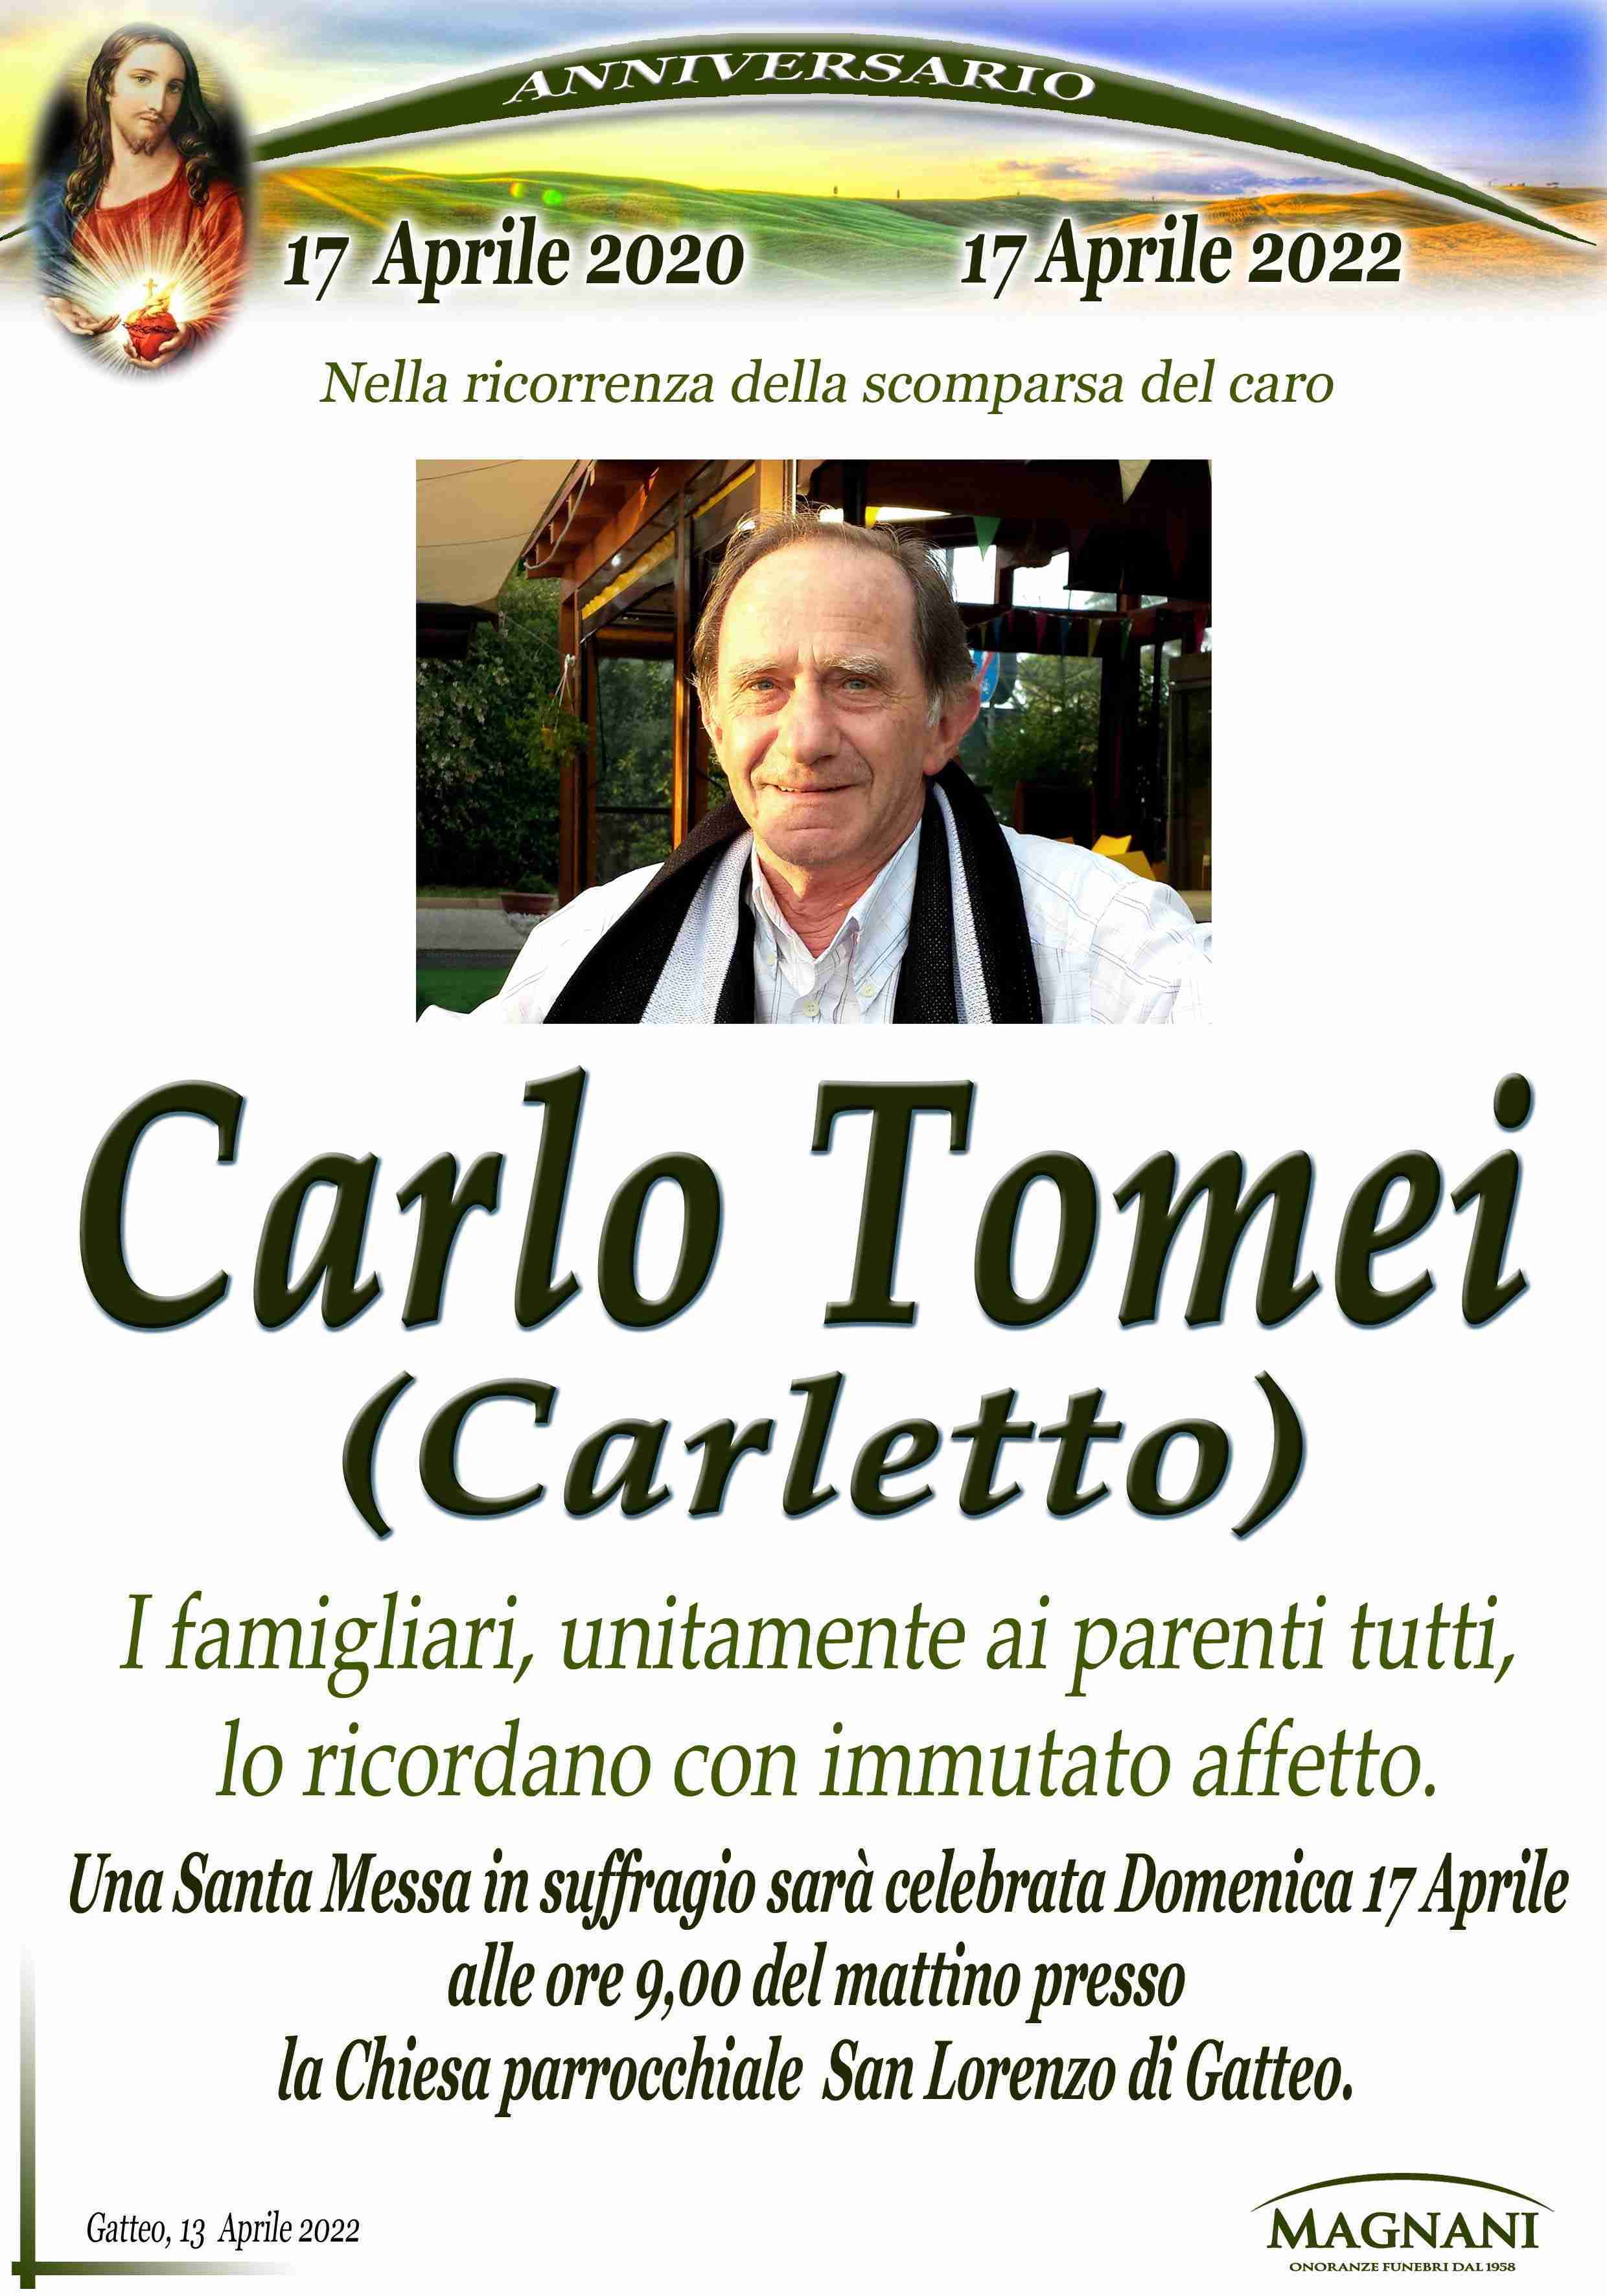 Carlo Tomei